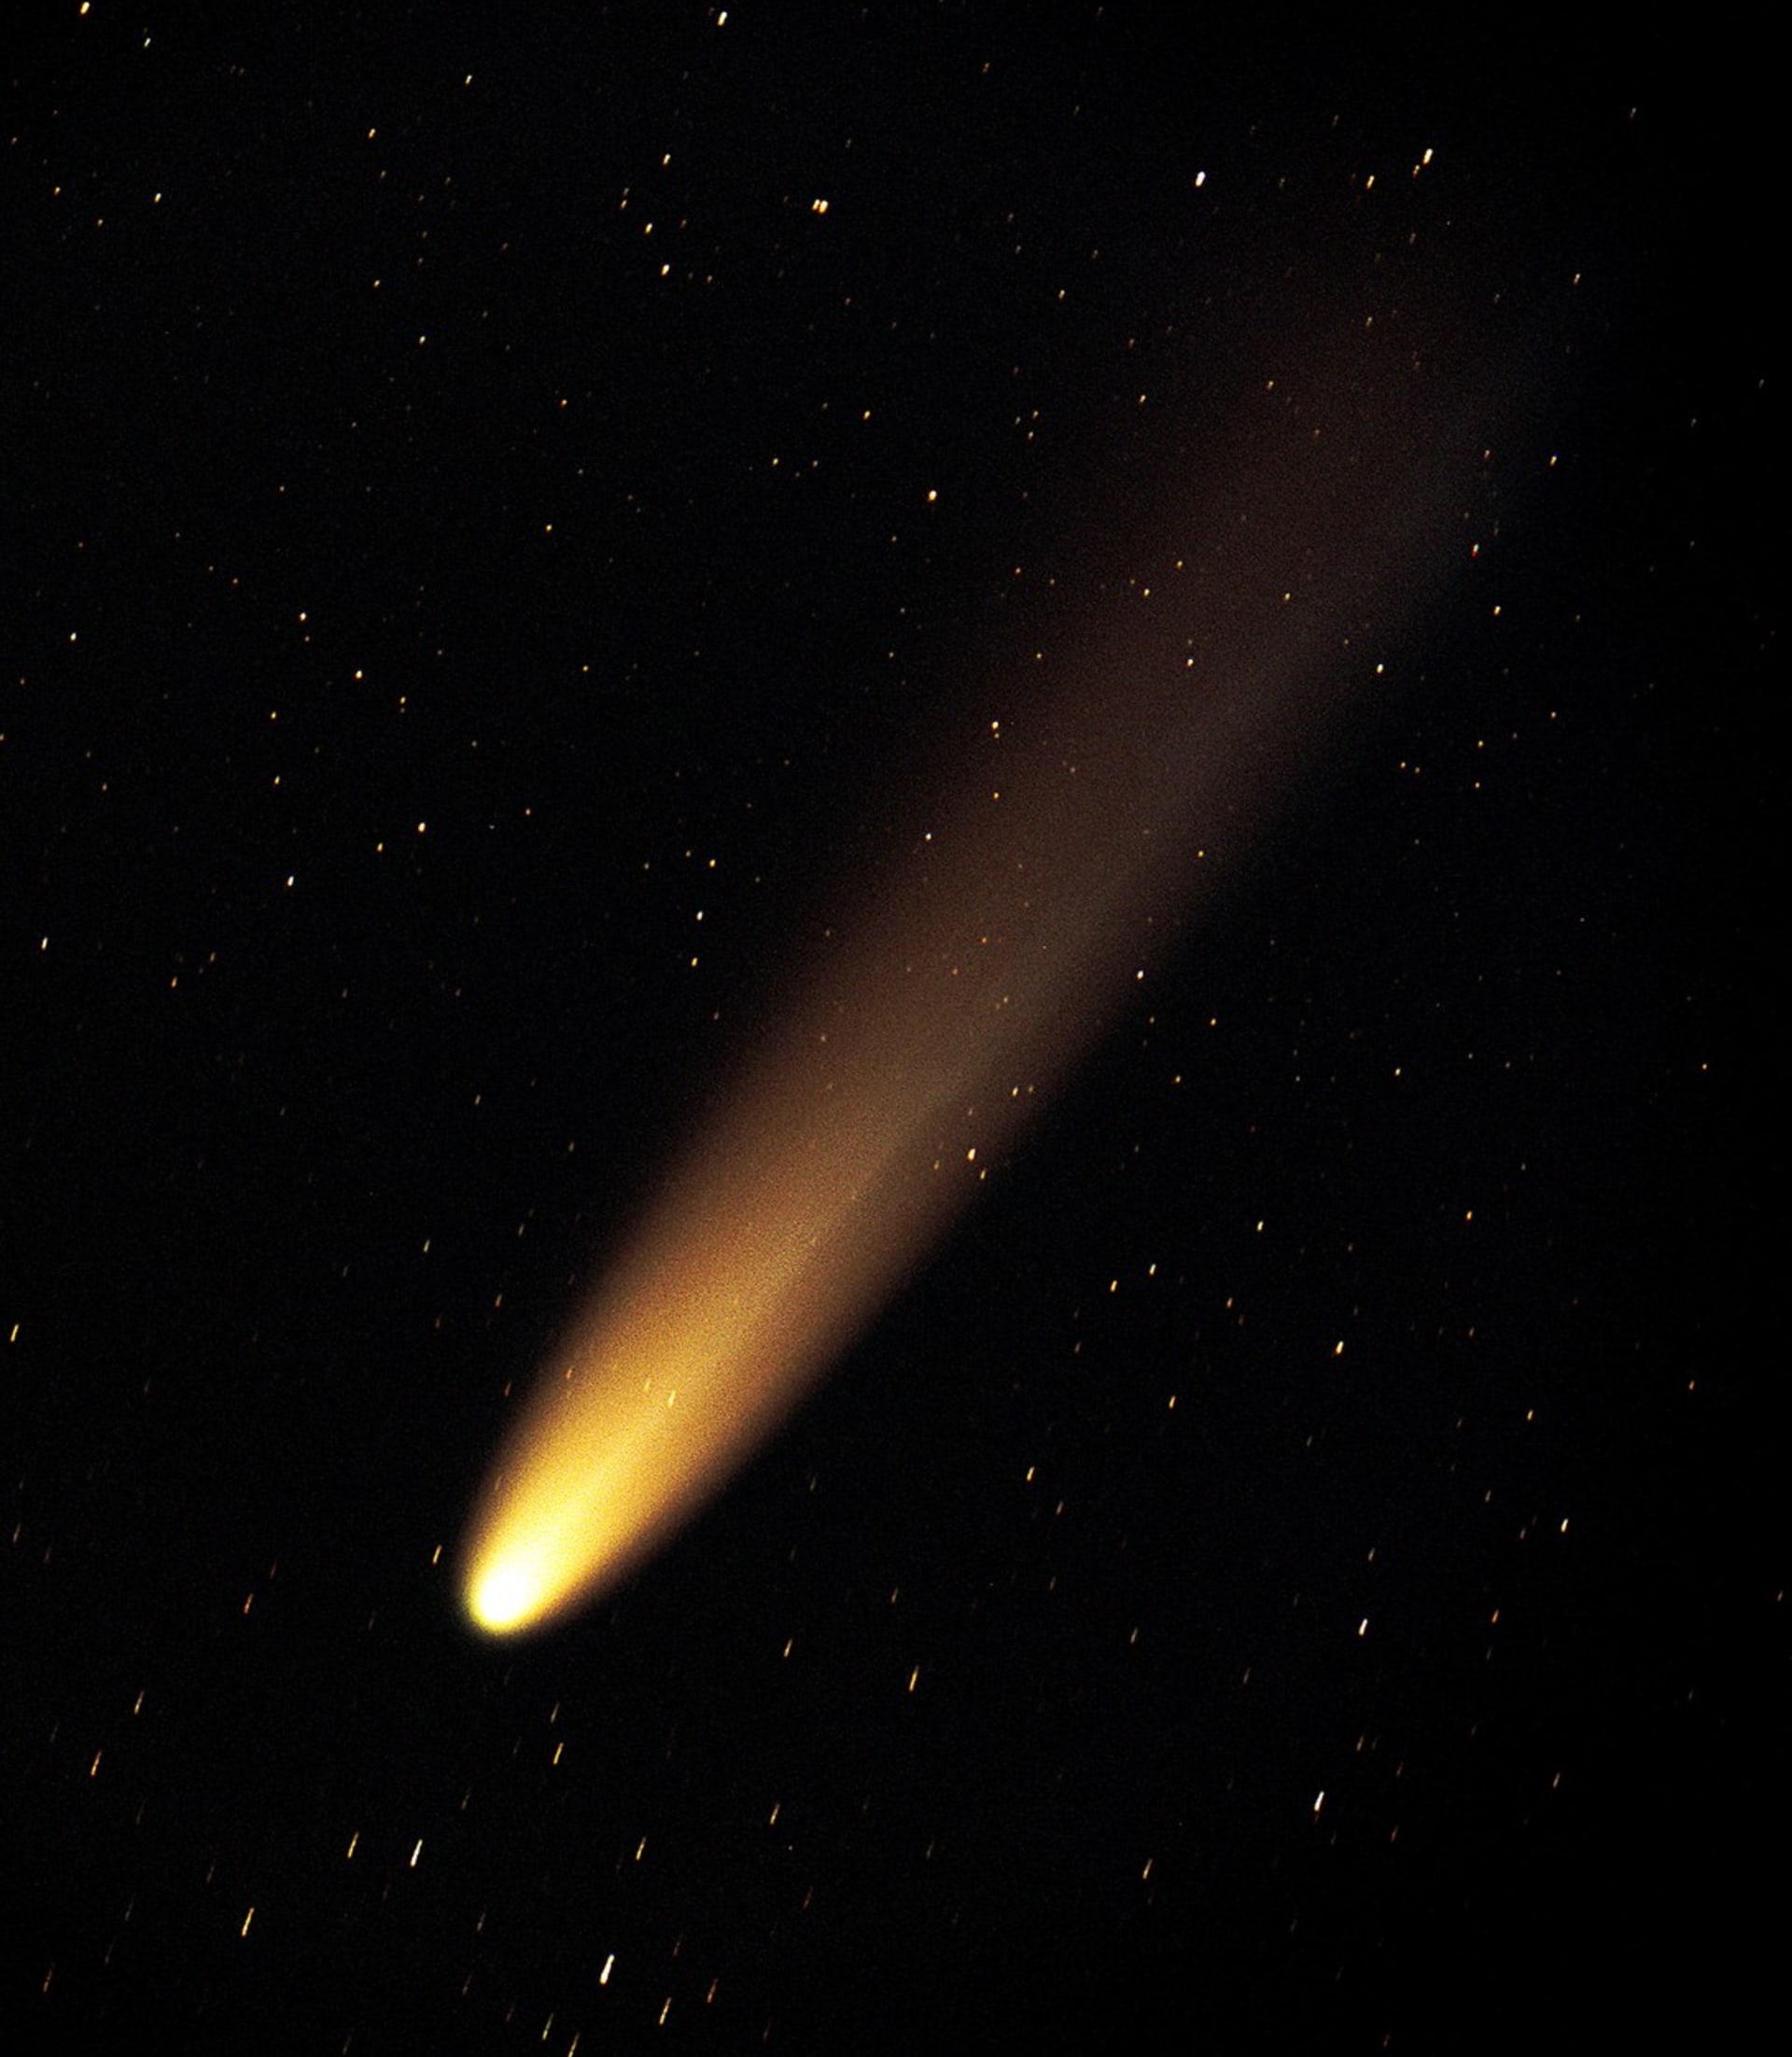 Kometa Hyakutake se stala jednou z nejjasnějších  komet 20. století (snímek je z 19. dubna 1996)